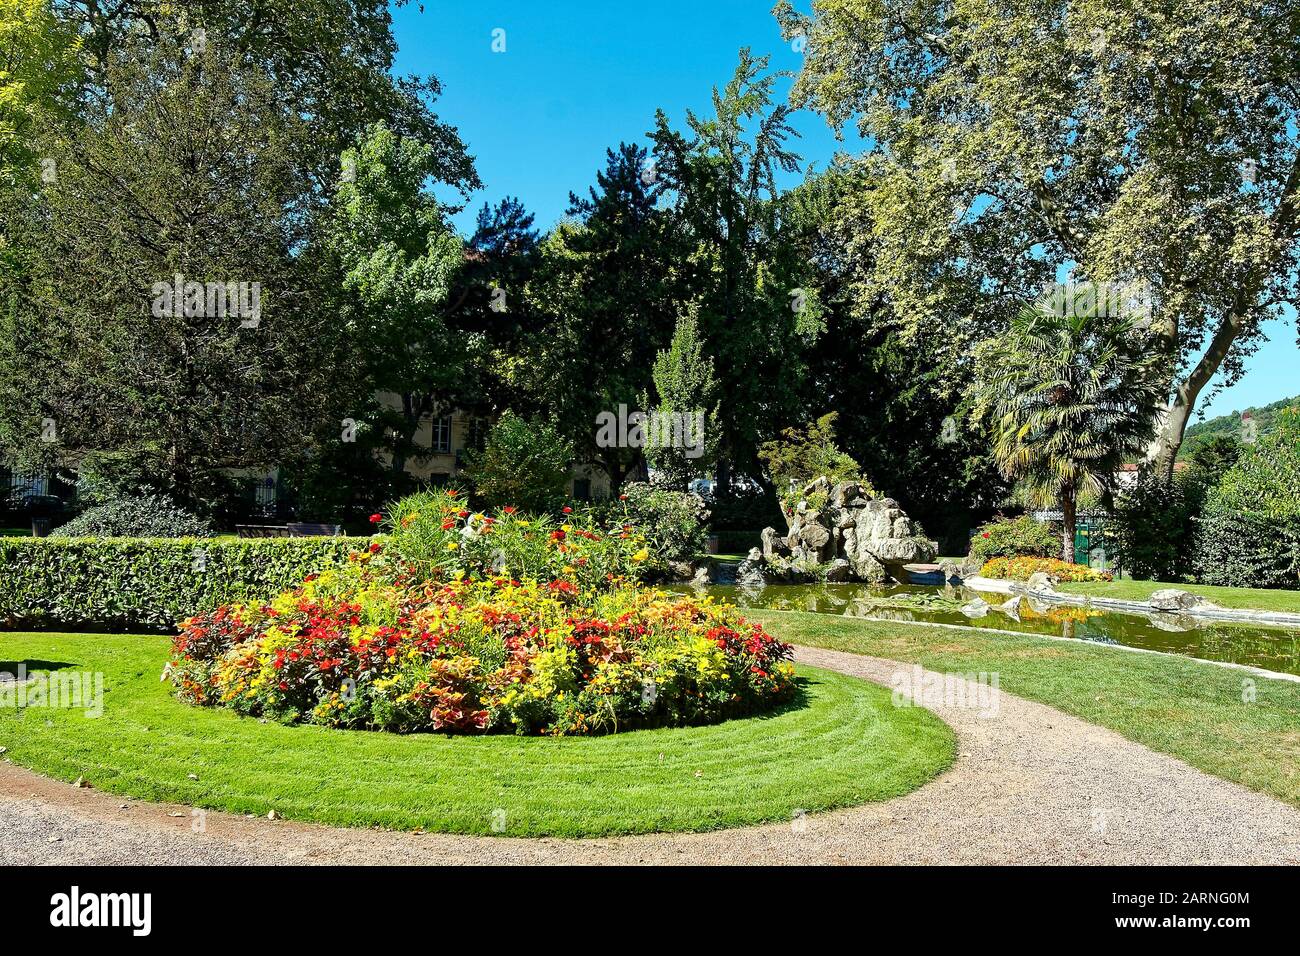 Garten, buntes Blumenbeet, rund, Pfad, Gras, Bäume, Wasser, friedlich, Place des Allobroges, Vienne, Frankreich, Sommer, horizontal Stockfoto